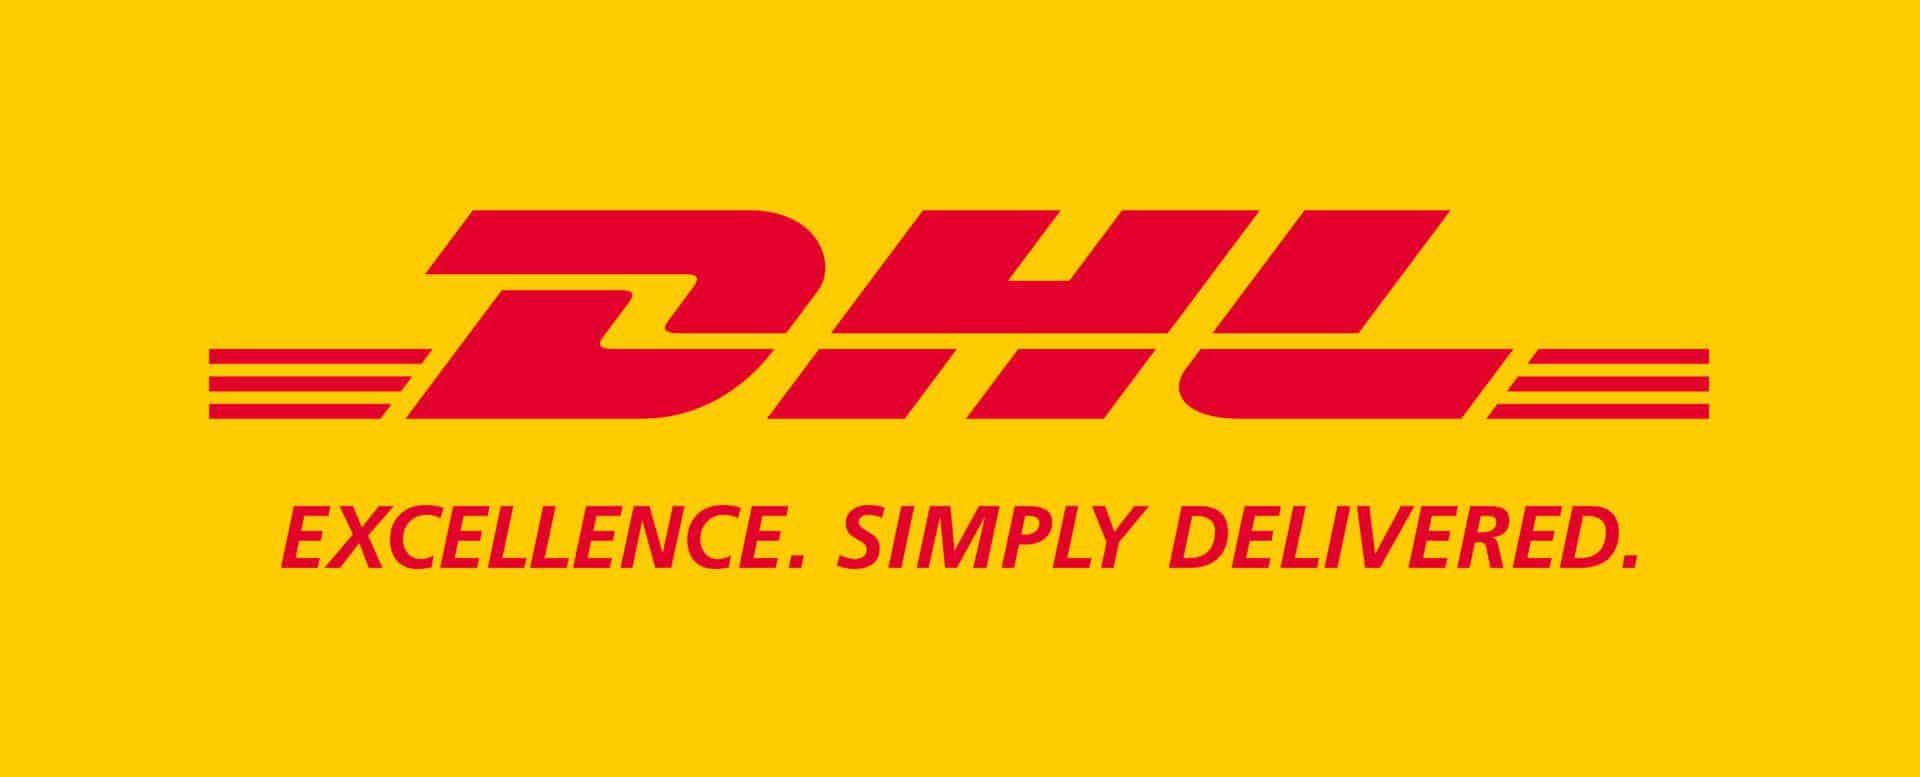 DHL Parcel UK takes parcel shops & completes rebrand